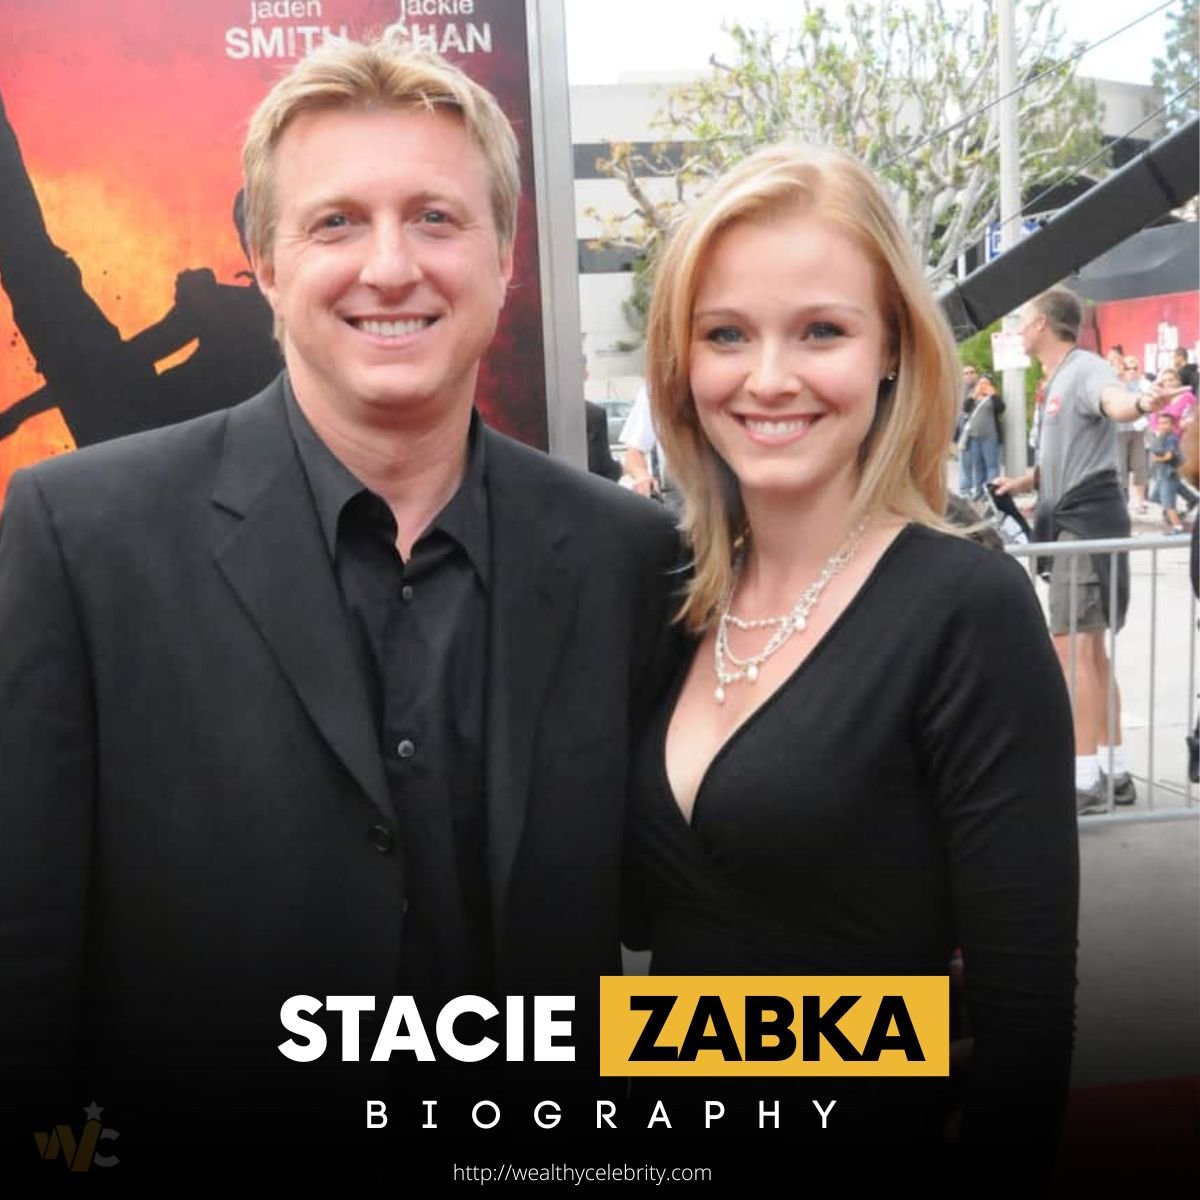 All About Stacie Zabka, Wife of William Zabka